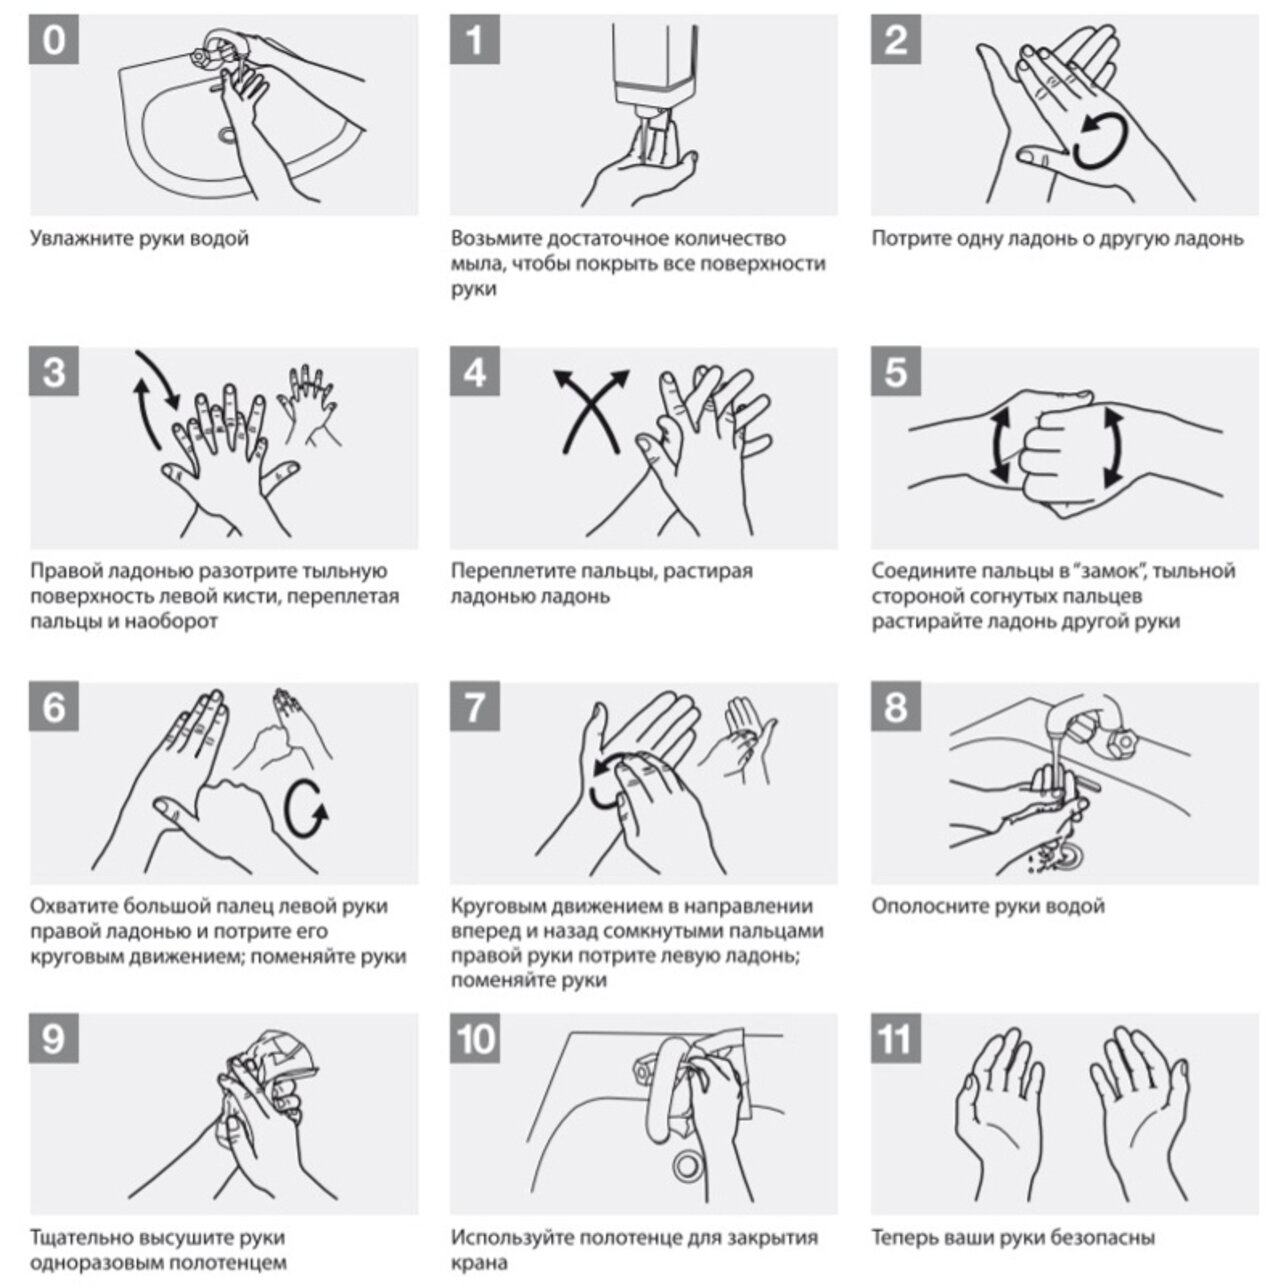 ВОЗ рекомендует: как правильно мыть руки — инструкция - 7Дней.ру